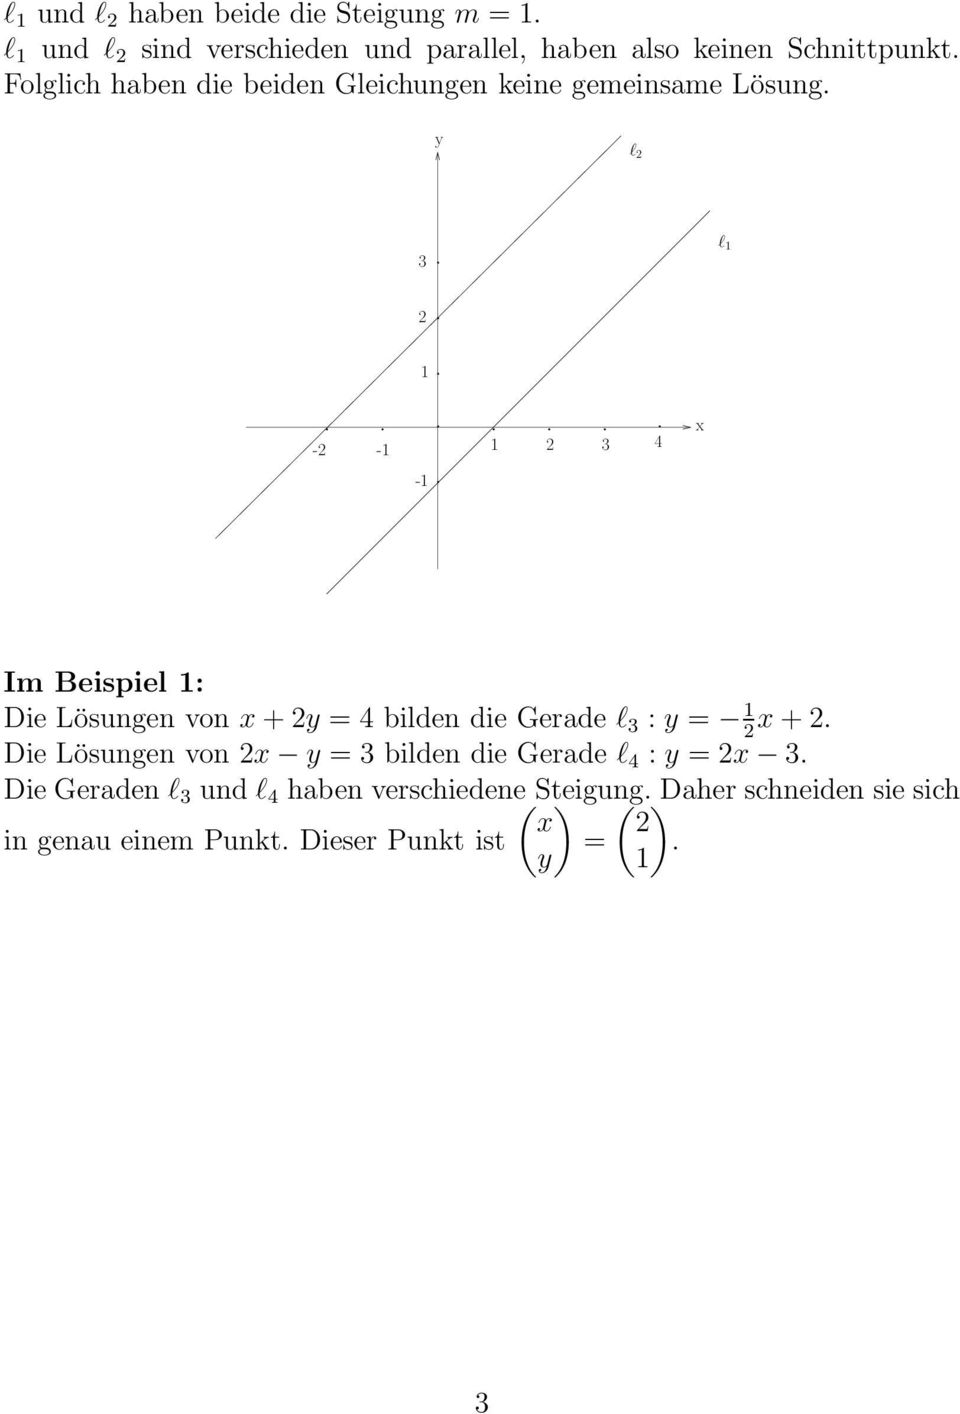 Die Lösungen von + = 4 bilden die Gerade l : = + Die Lösungen von = bilden die Gerade l 4 : = Die